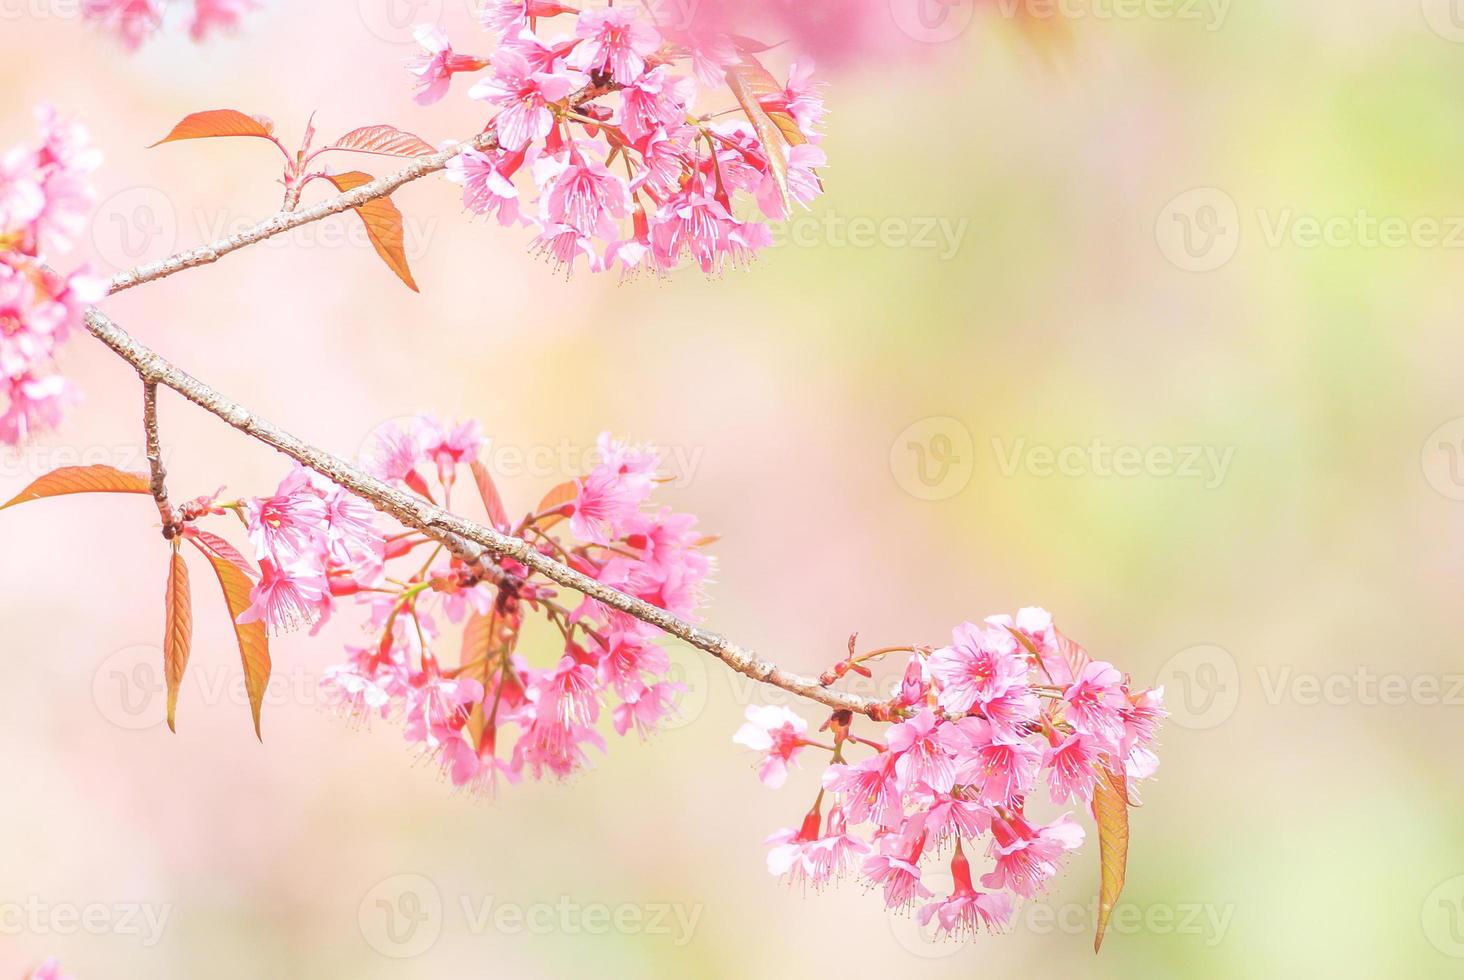 fiori di ciliegio in primavera con messa a fuoco morbida, fioritura di ciliegio primaverile sfocata sfocata, sfondo di fiori bokeh, sfondo di fiori pastello e tenui. foto